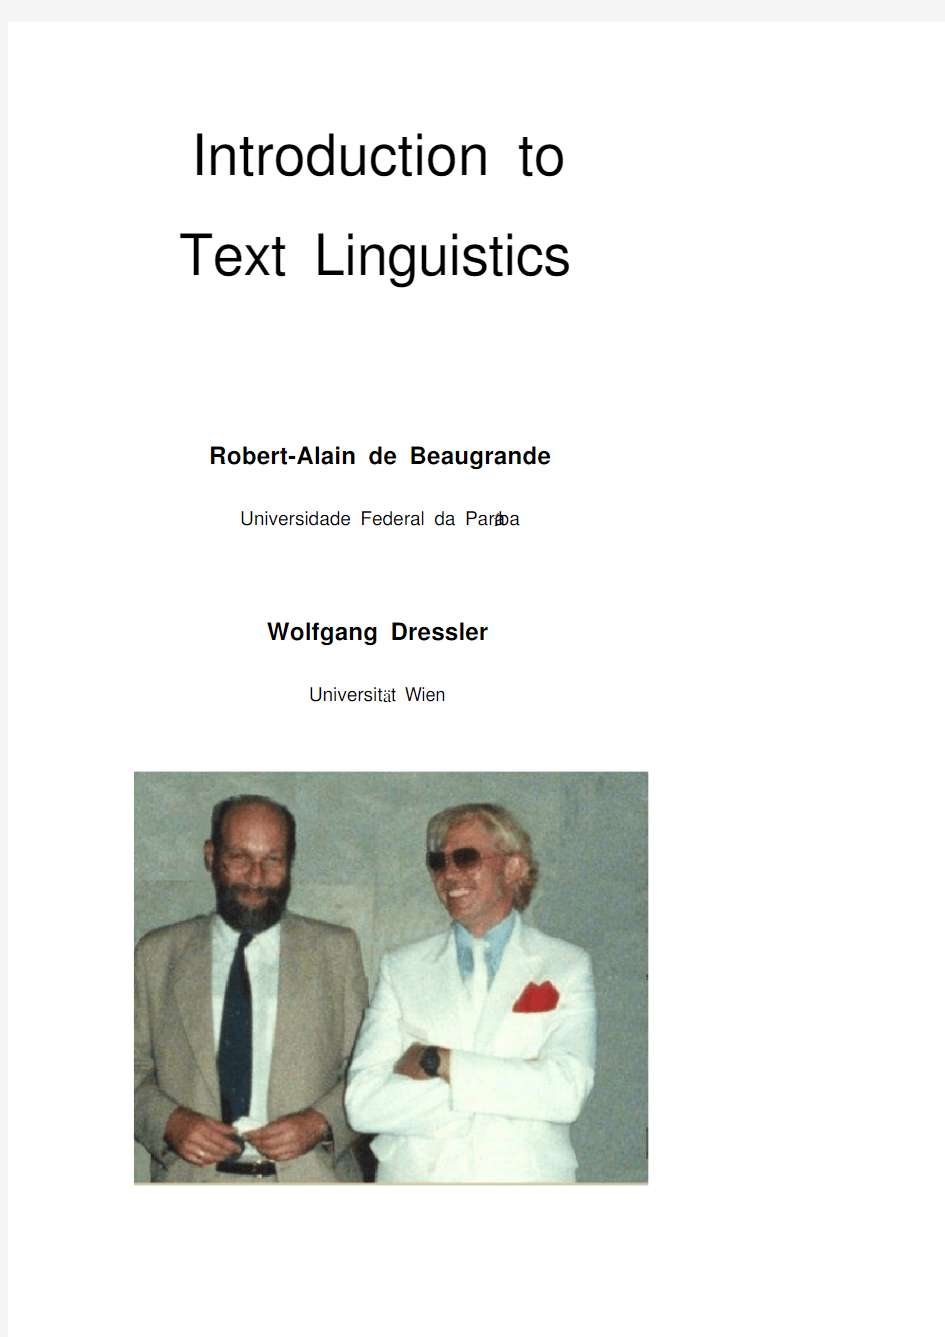 Text Linguistics